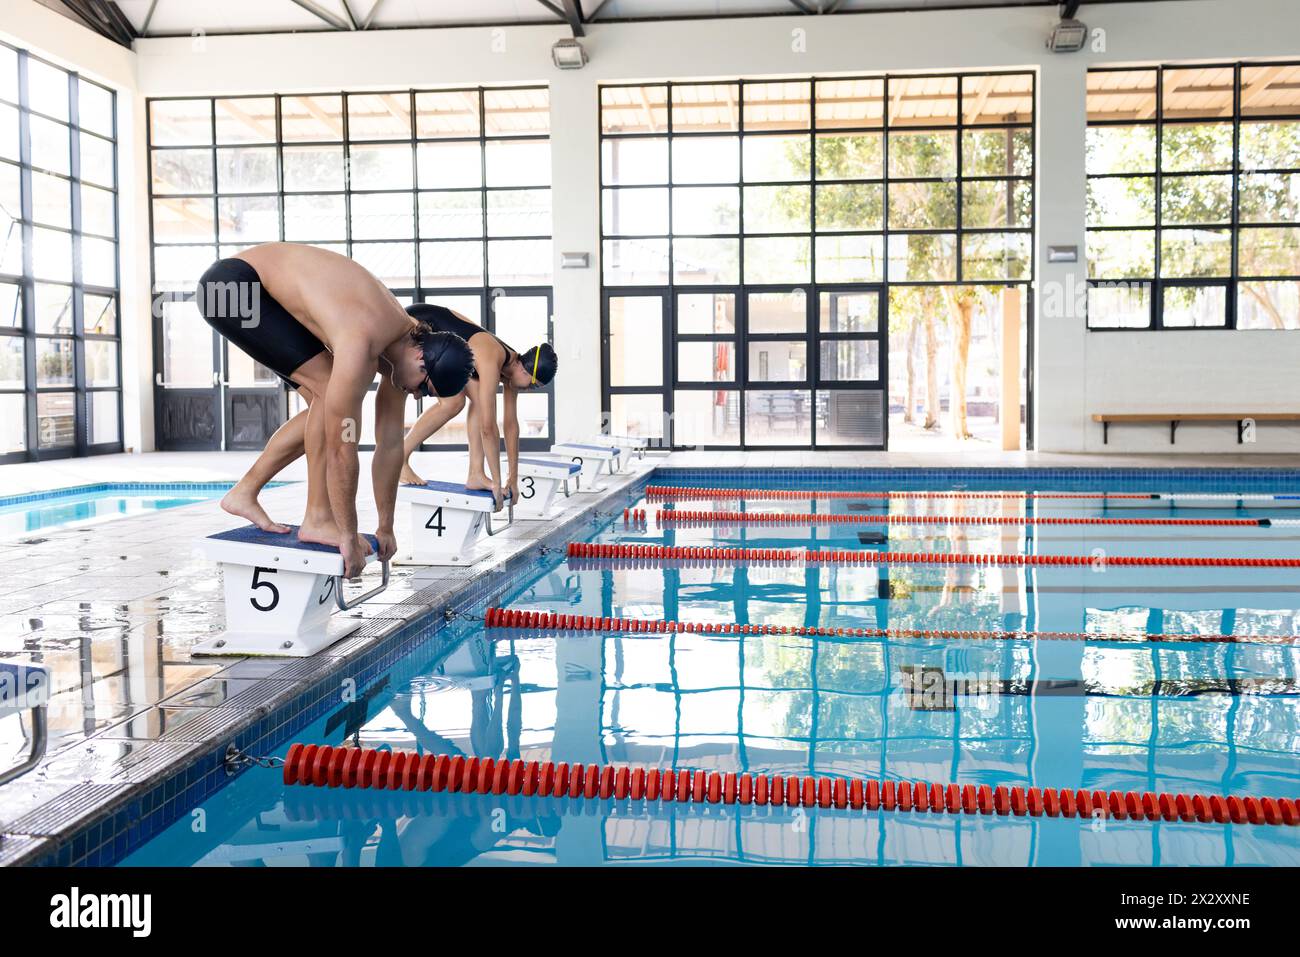 Divers jeunes compétiteurs nageurs, y compris un homme caucasien et une femme biraciale, se préparant à plonger Banque D'Images